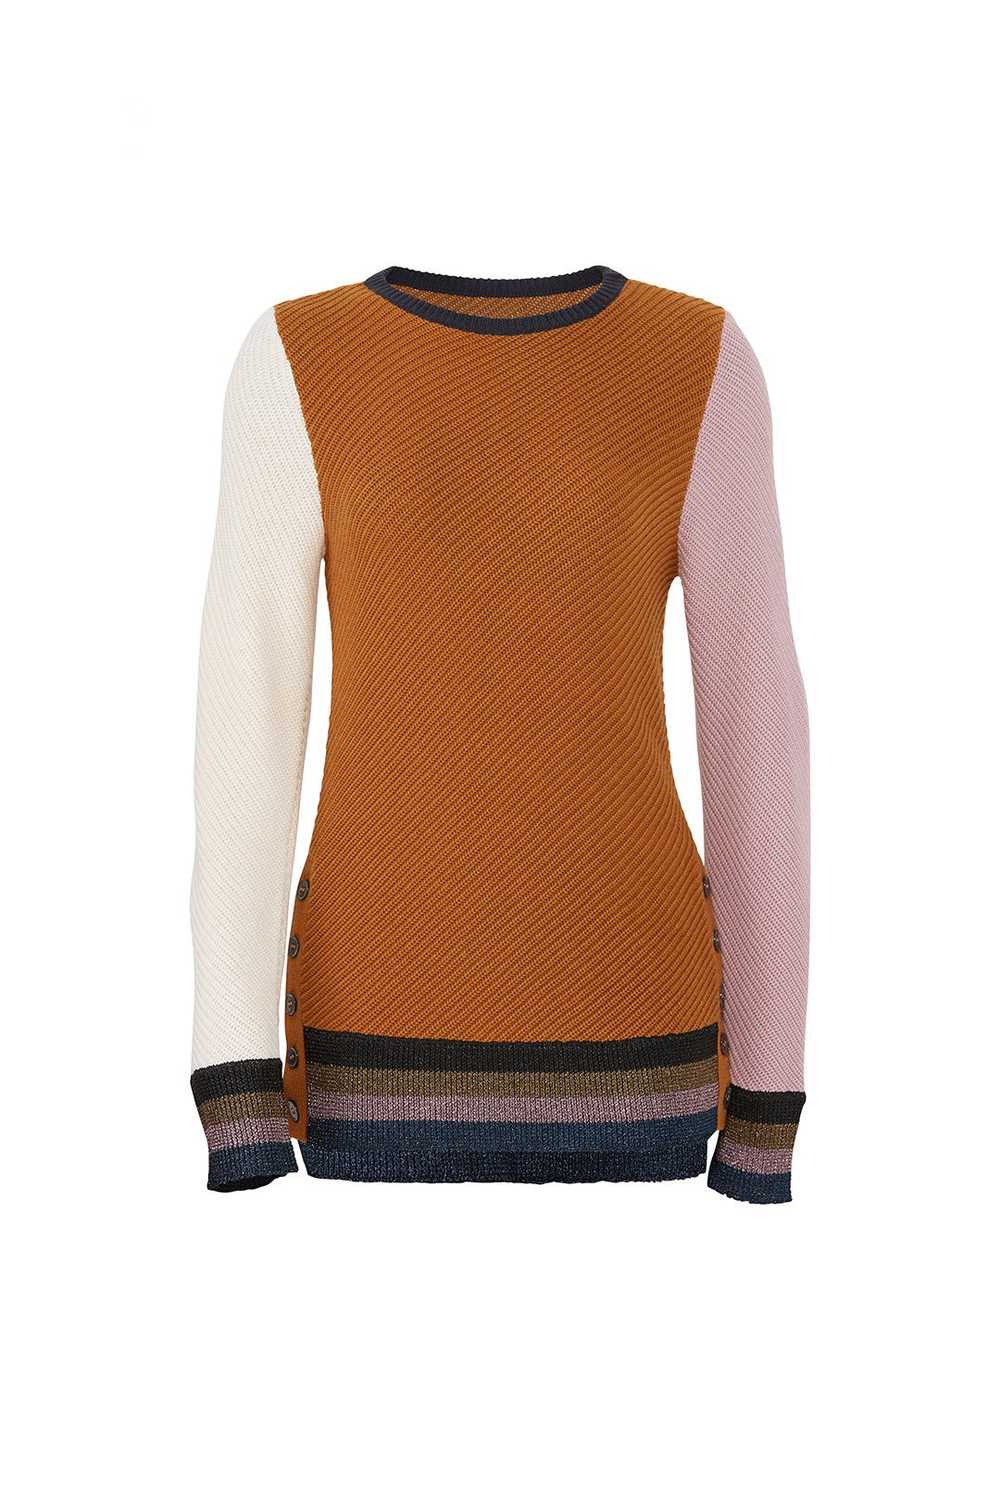 Apiece Apart Almeria Button Side Sweater - image 4